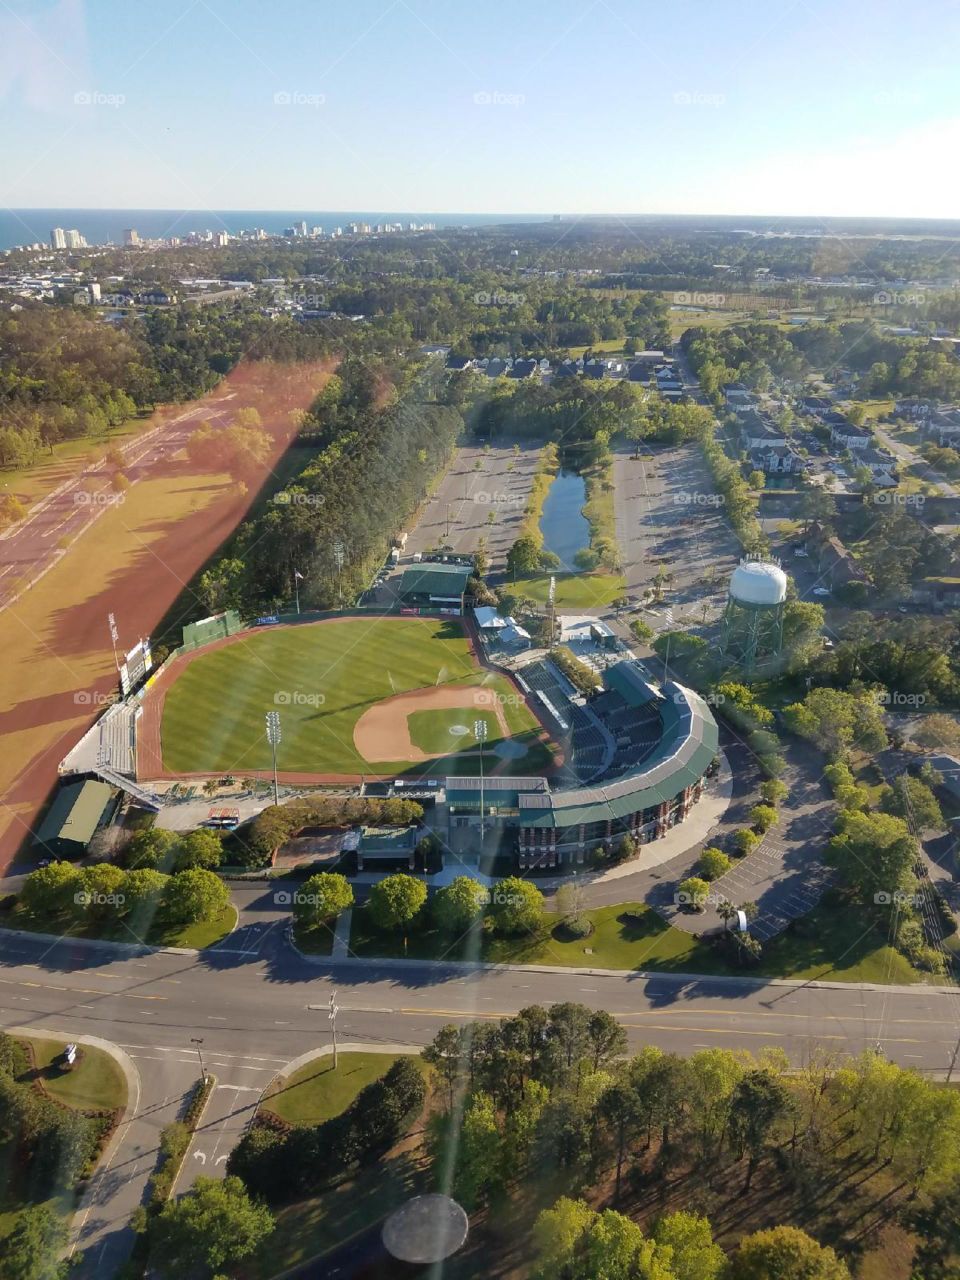 Amazing baseball field view 😎